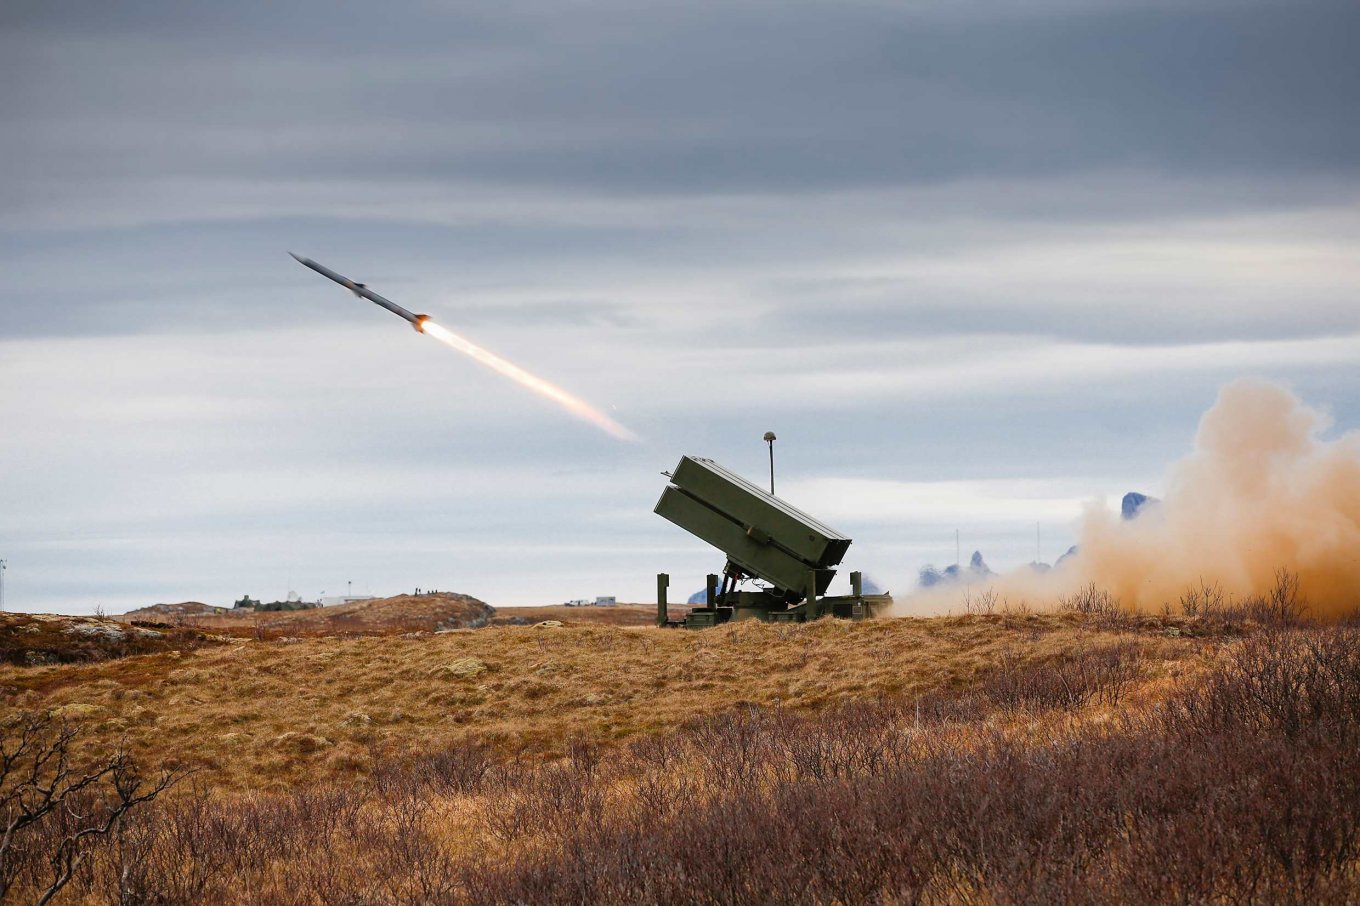 Stany Zjednoczone rozpoczęły proces zakupu przeciwlotniczych zestawów rakietowych NASAMS dla Sił Zbrojnych Ukrainy